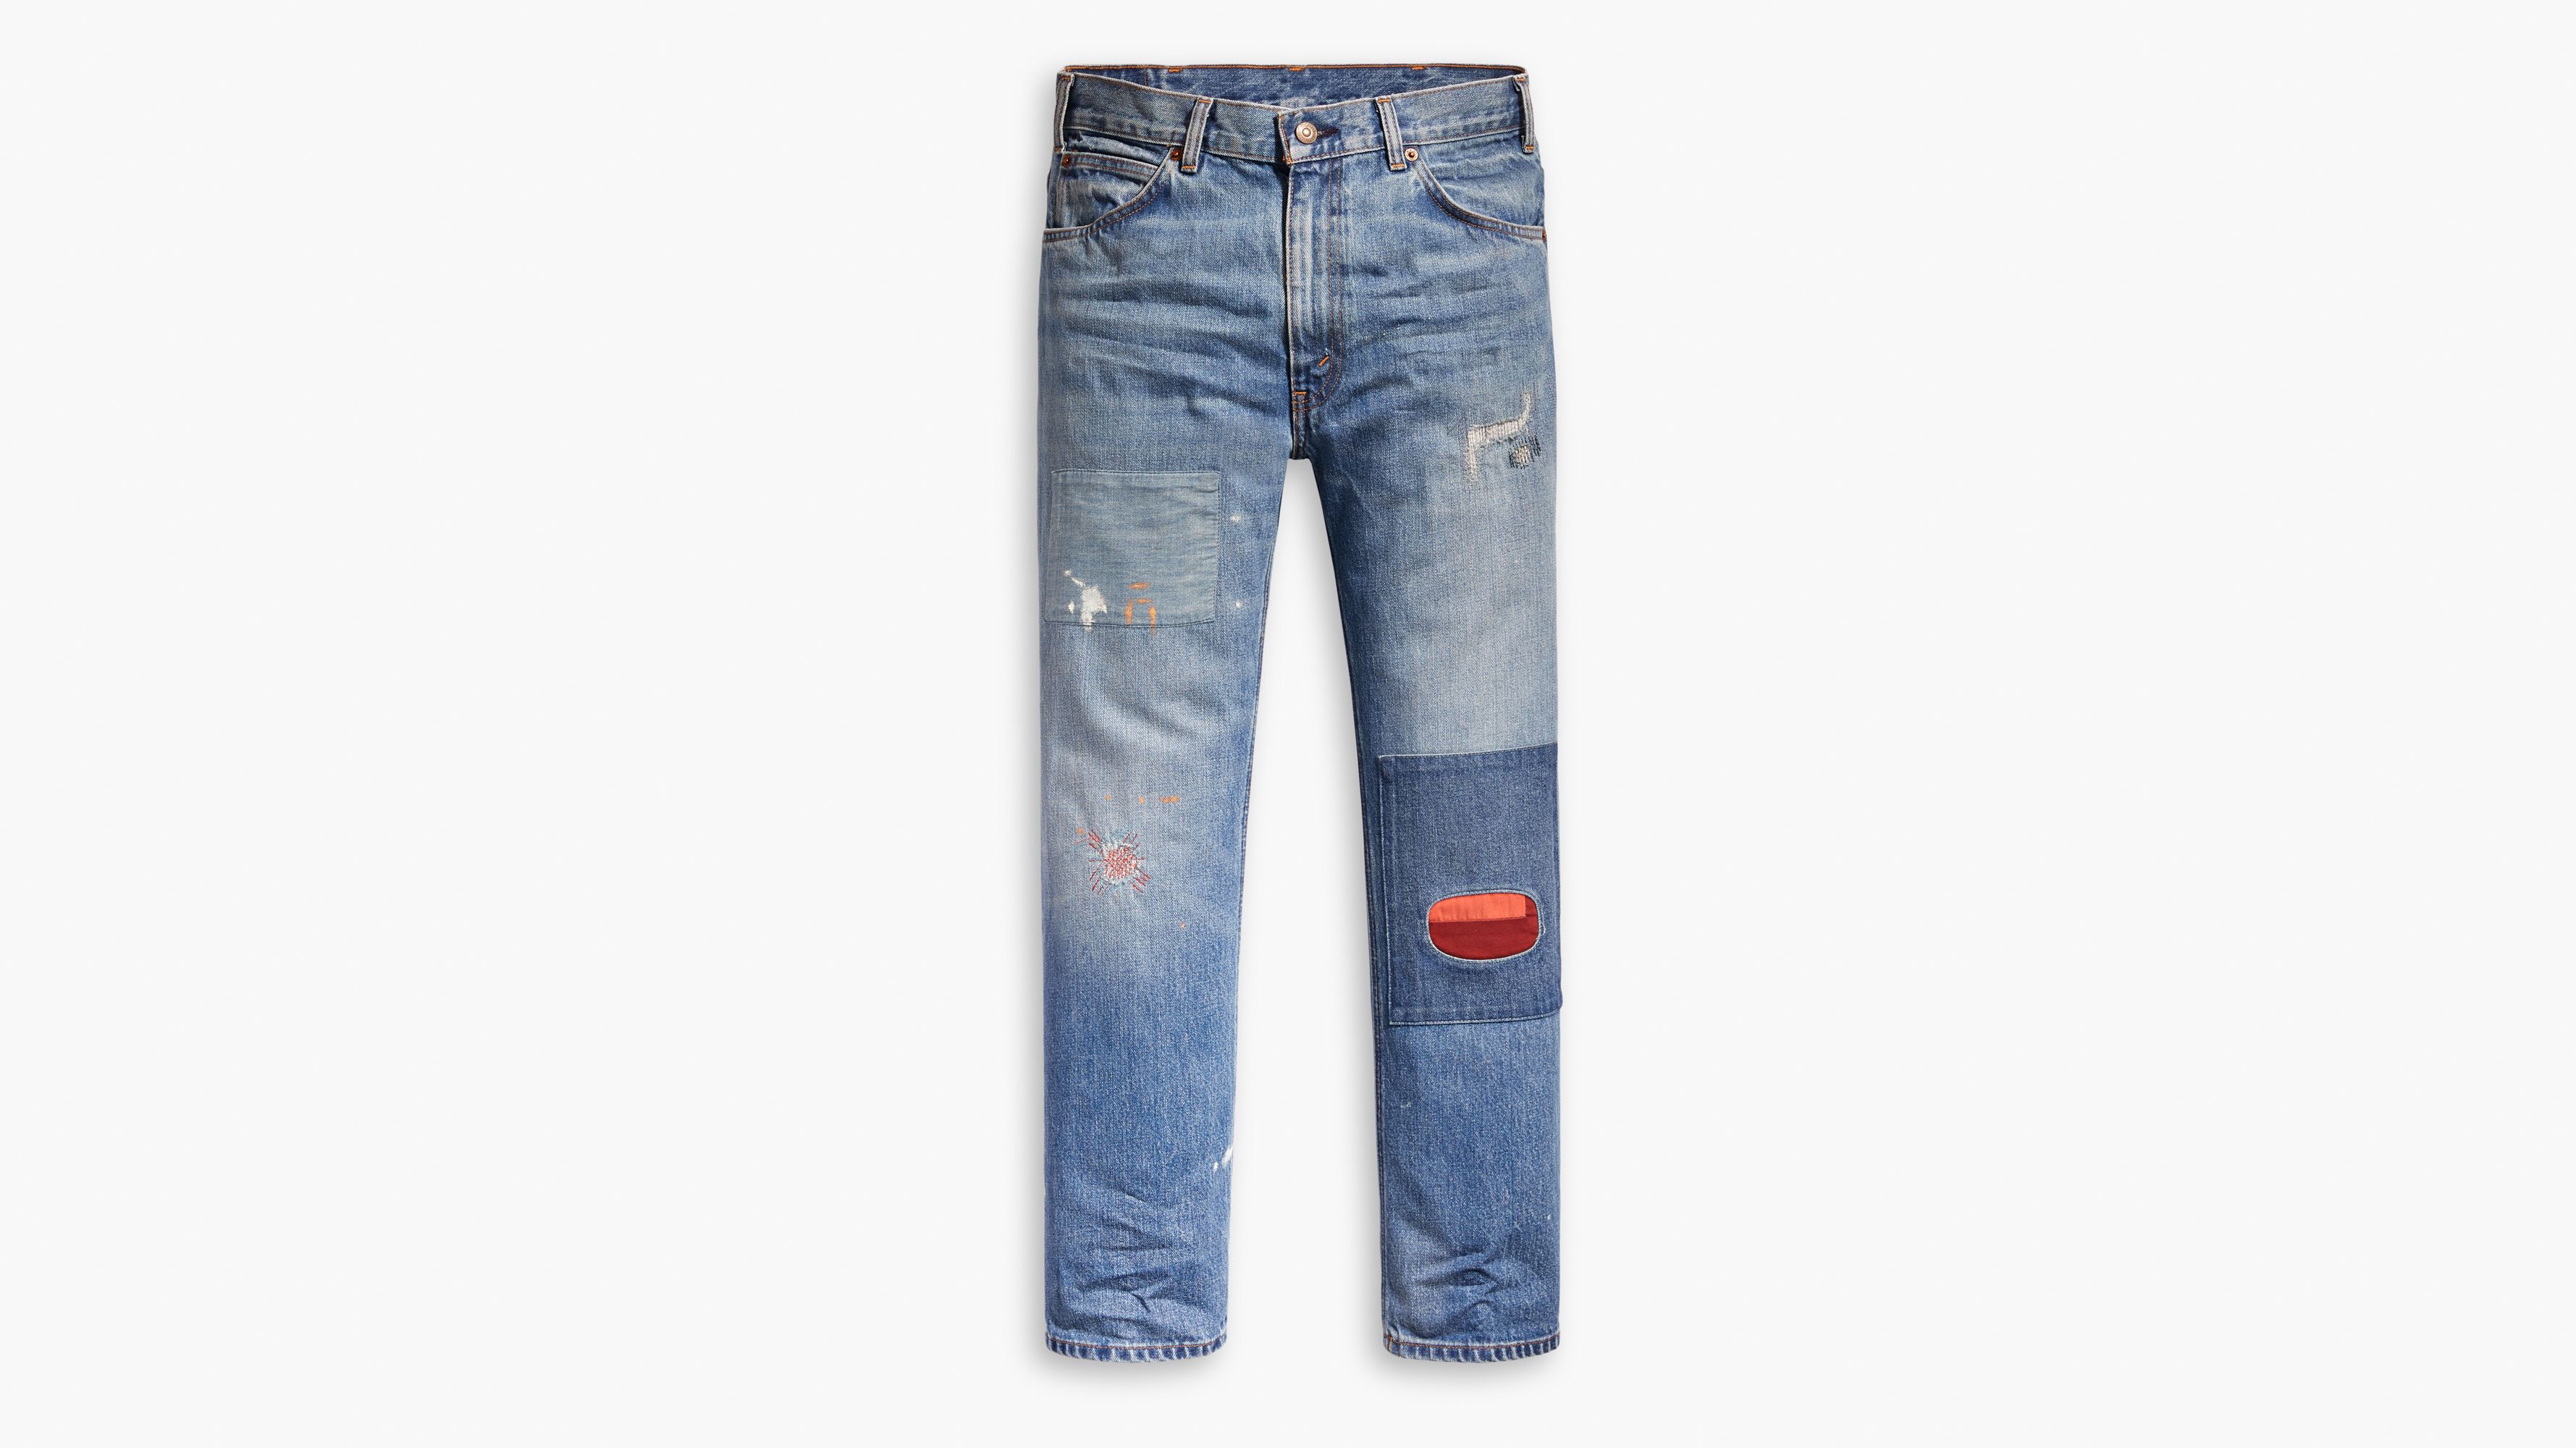 's ® Men's Jeans   Medium Wash   Levi's® US